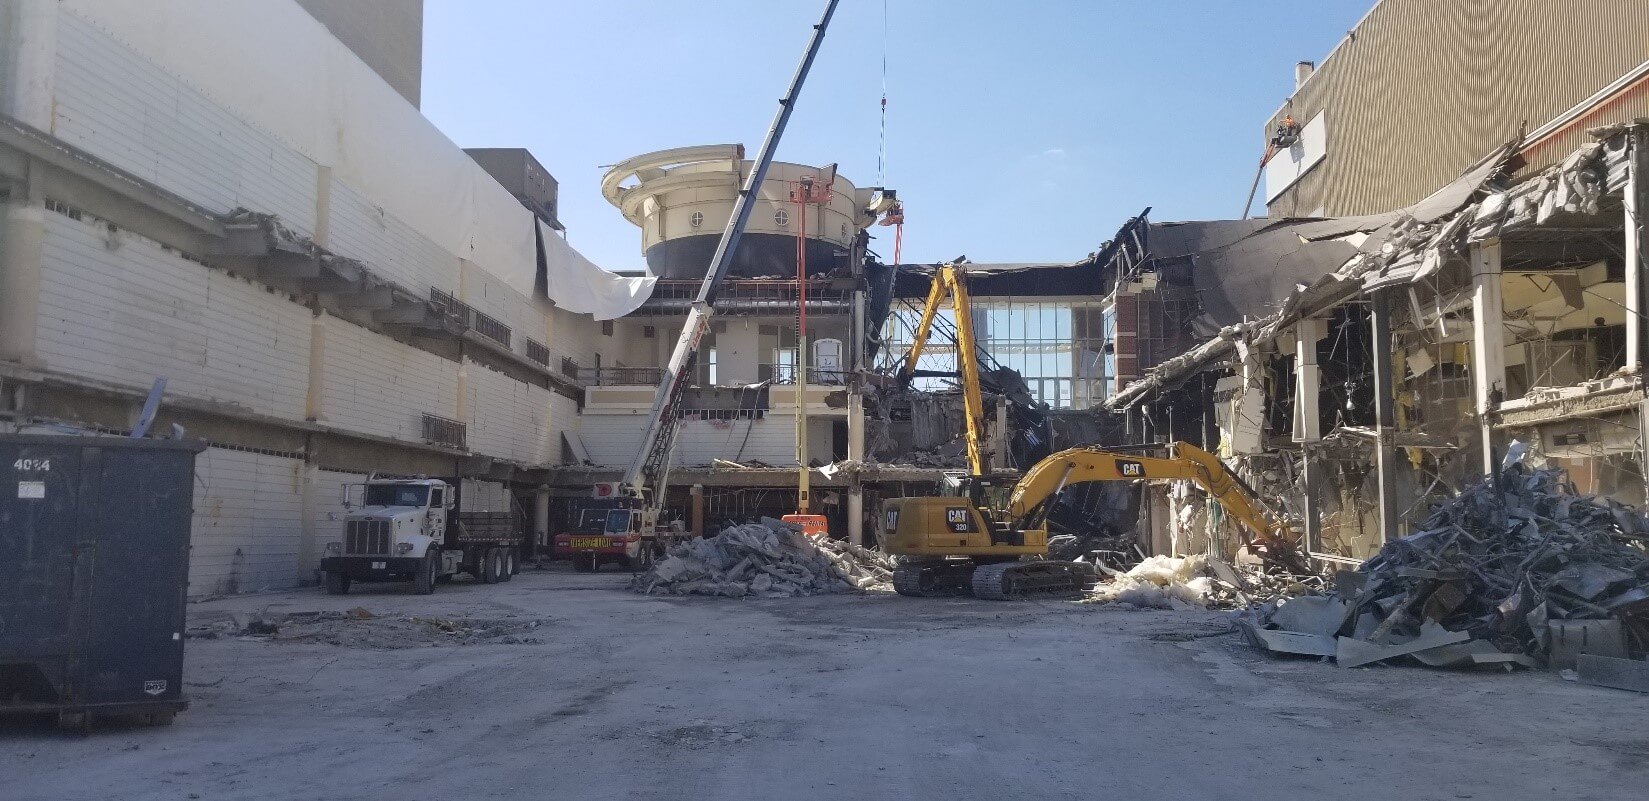 Lexington Kentucky Convention Center building demolition